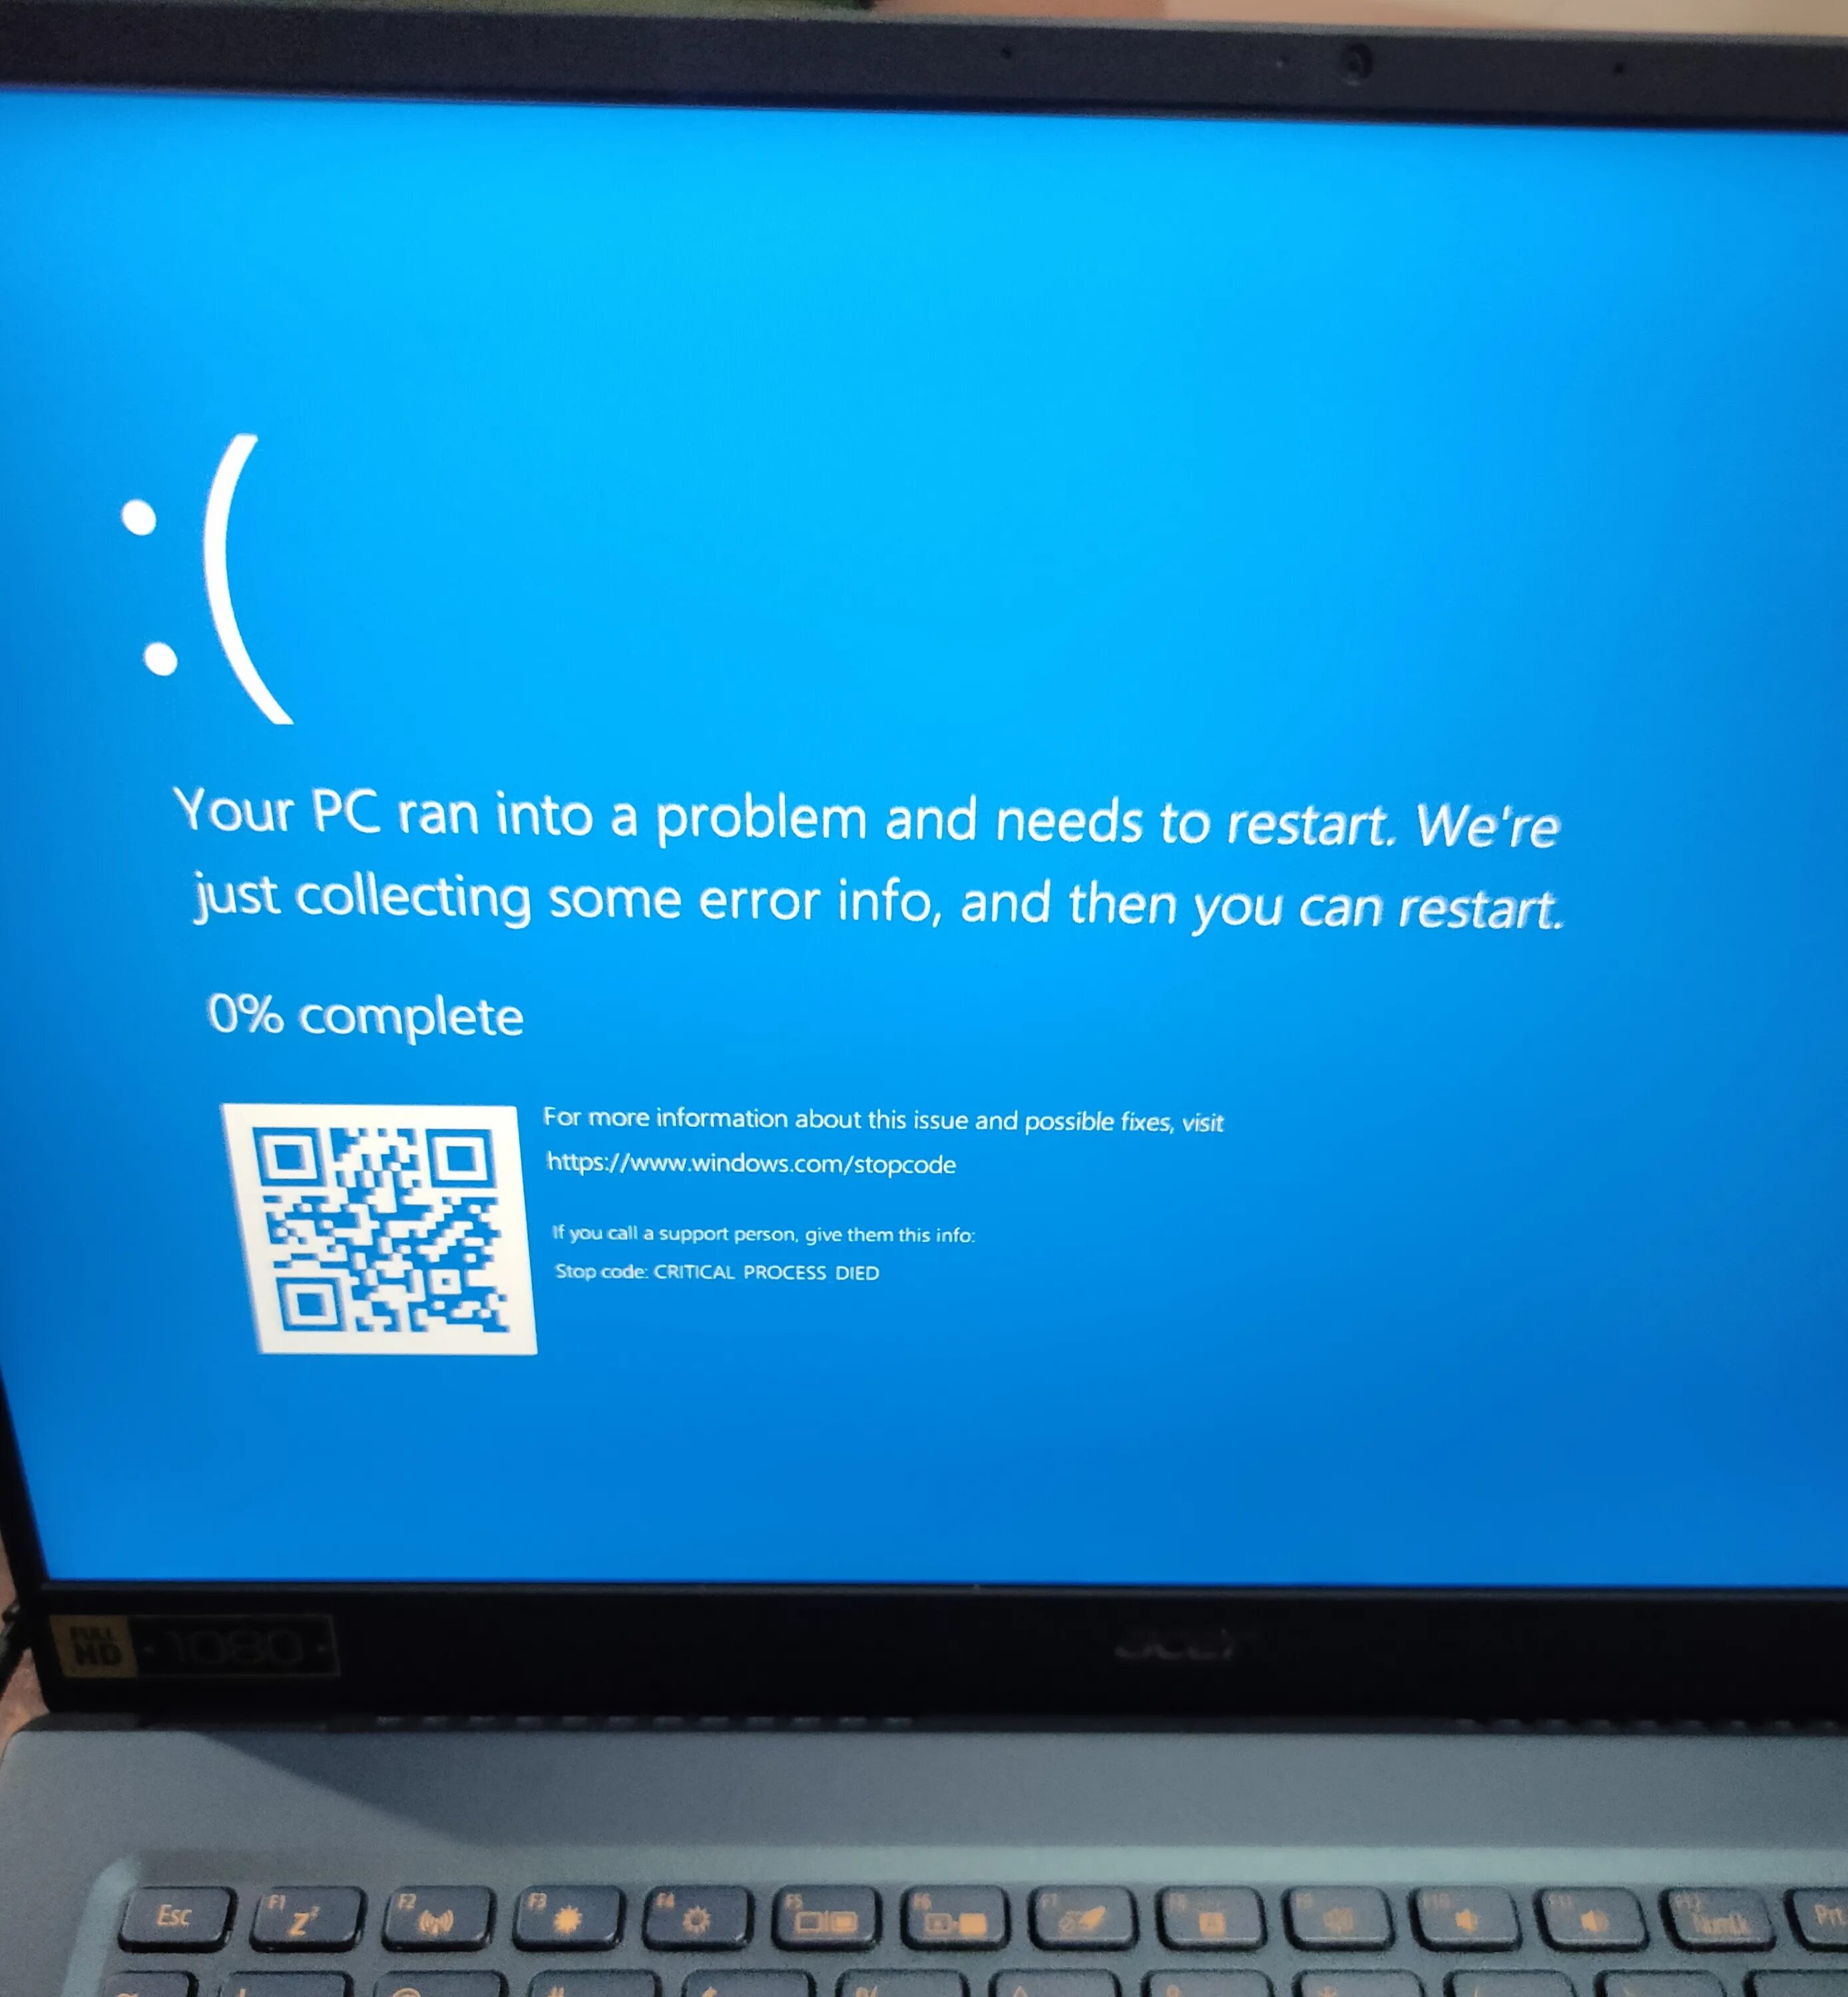 Синий экран смерти Kernel. Синий экран смерти Windows 10 Kernel data inpage Error. Экран смерти critical process died. Синий экран с надписями.